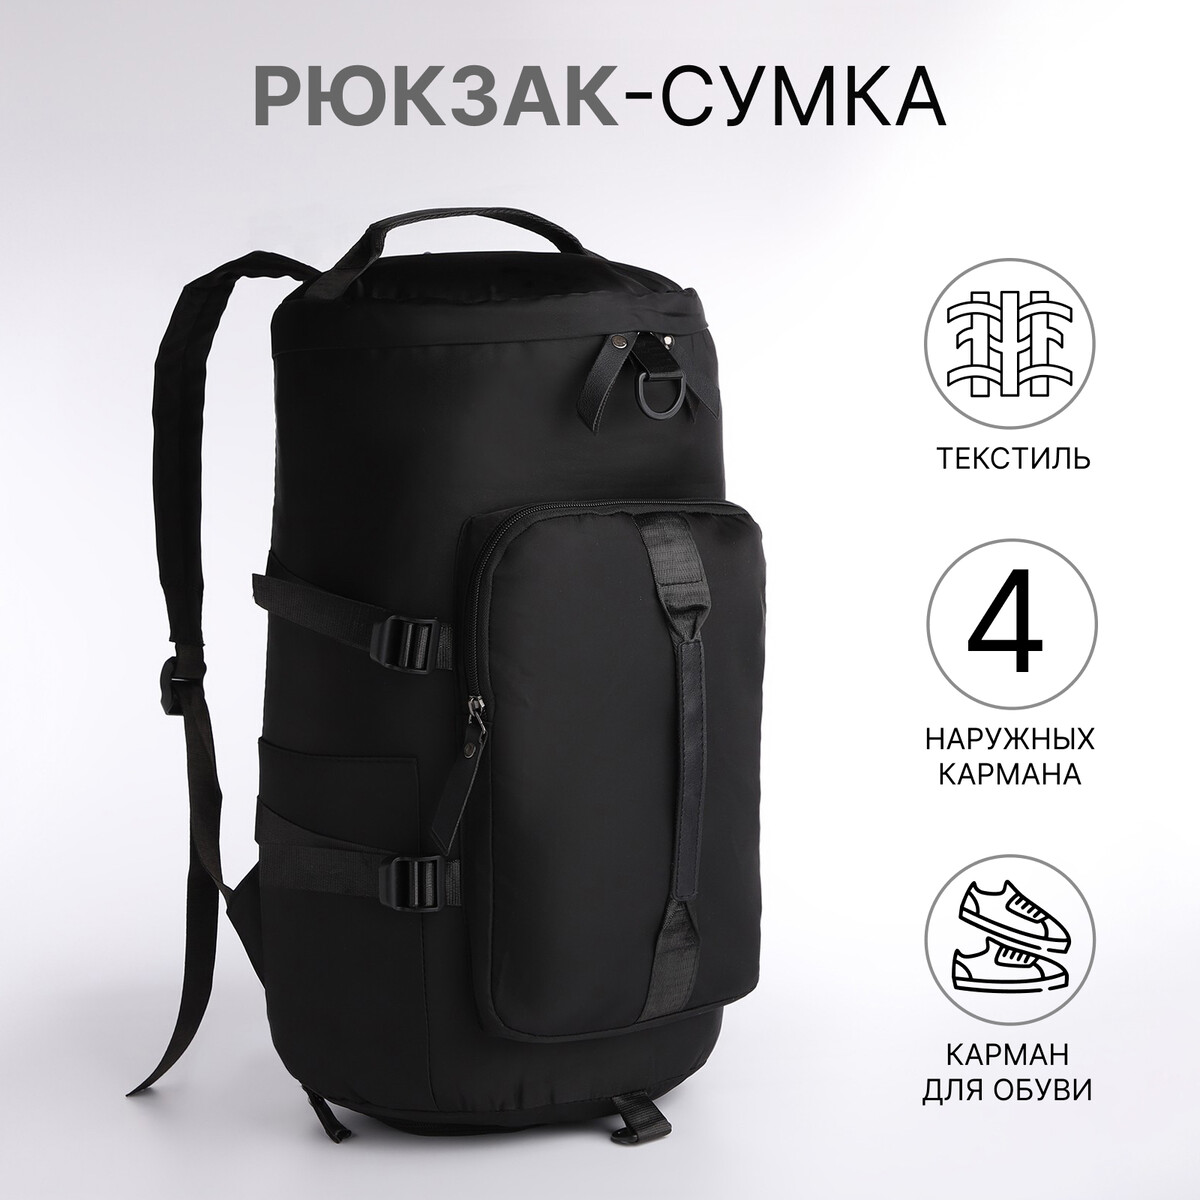 Рюкзак-сумка на молнии, 4 наружных кармана, отделение для обуви, цвет черный No brand